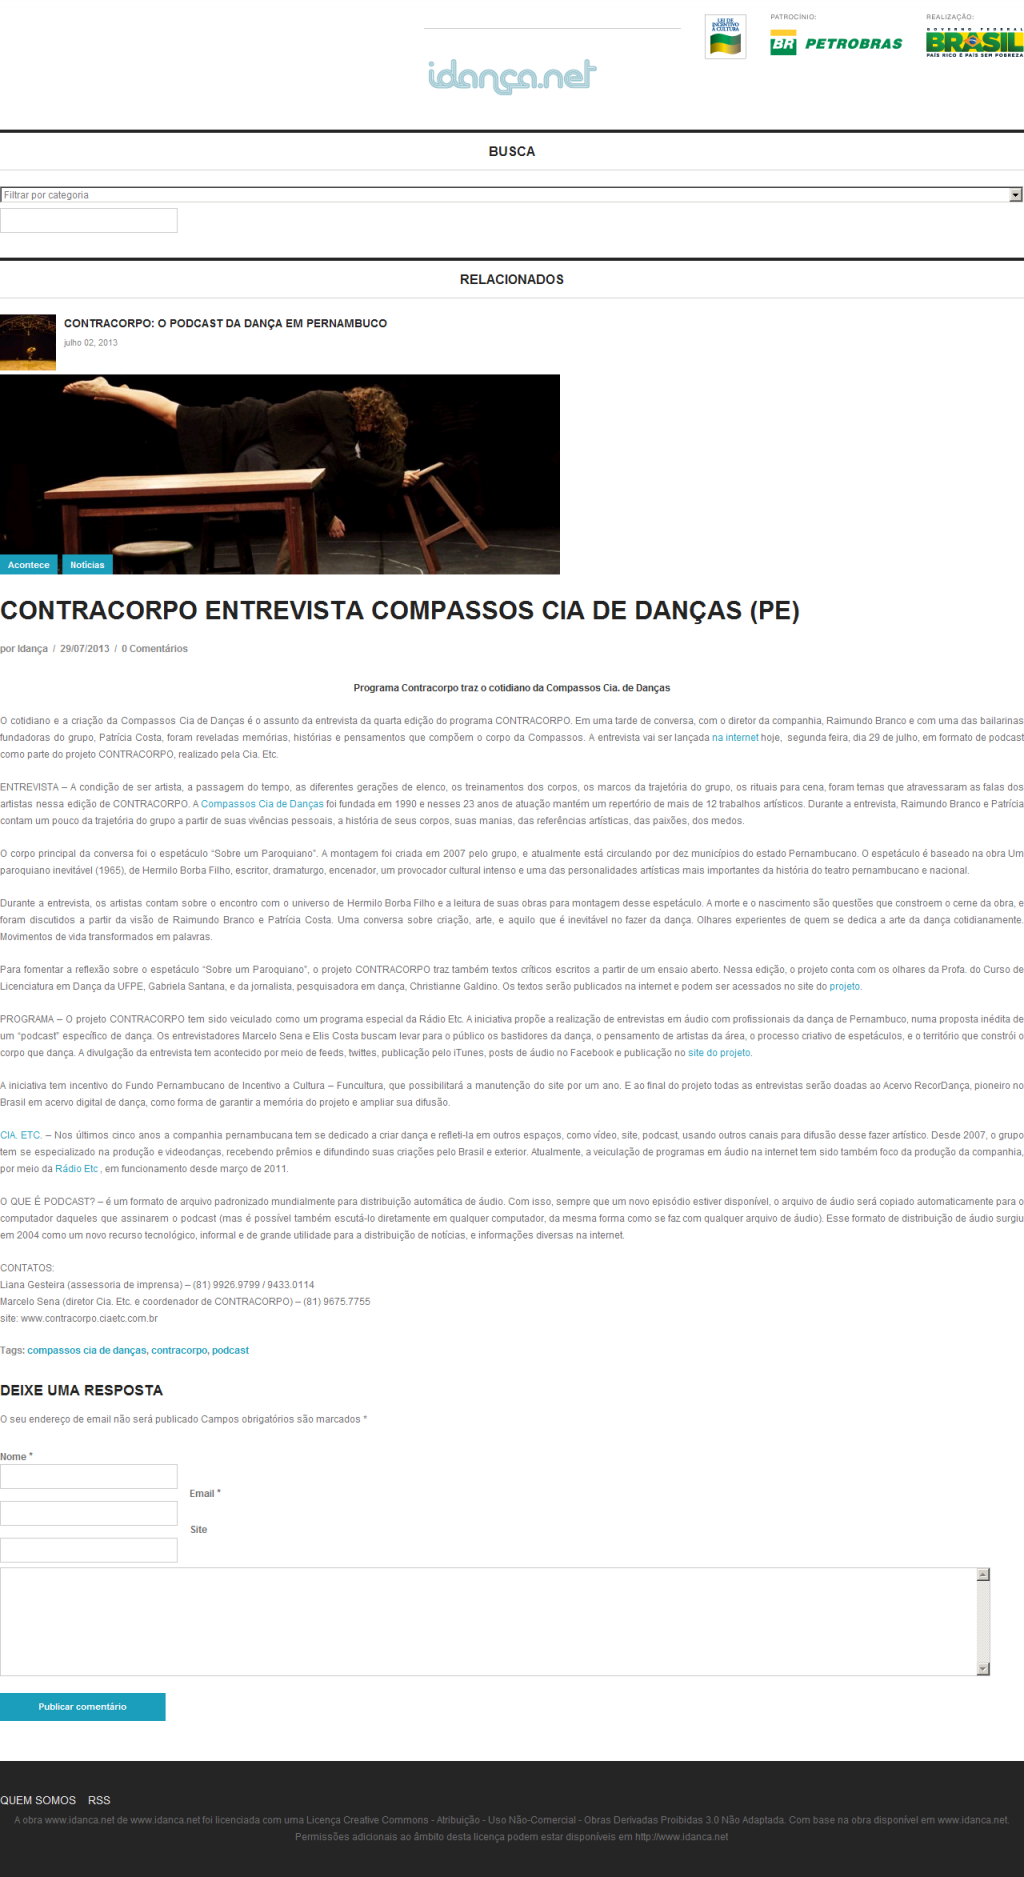 [Idança] Contracorpo entrevista Compassos Cia. de Danças (PE)